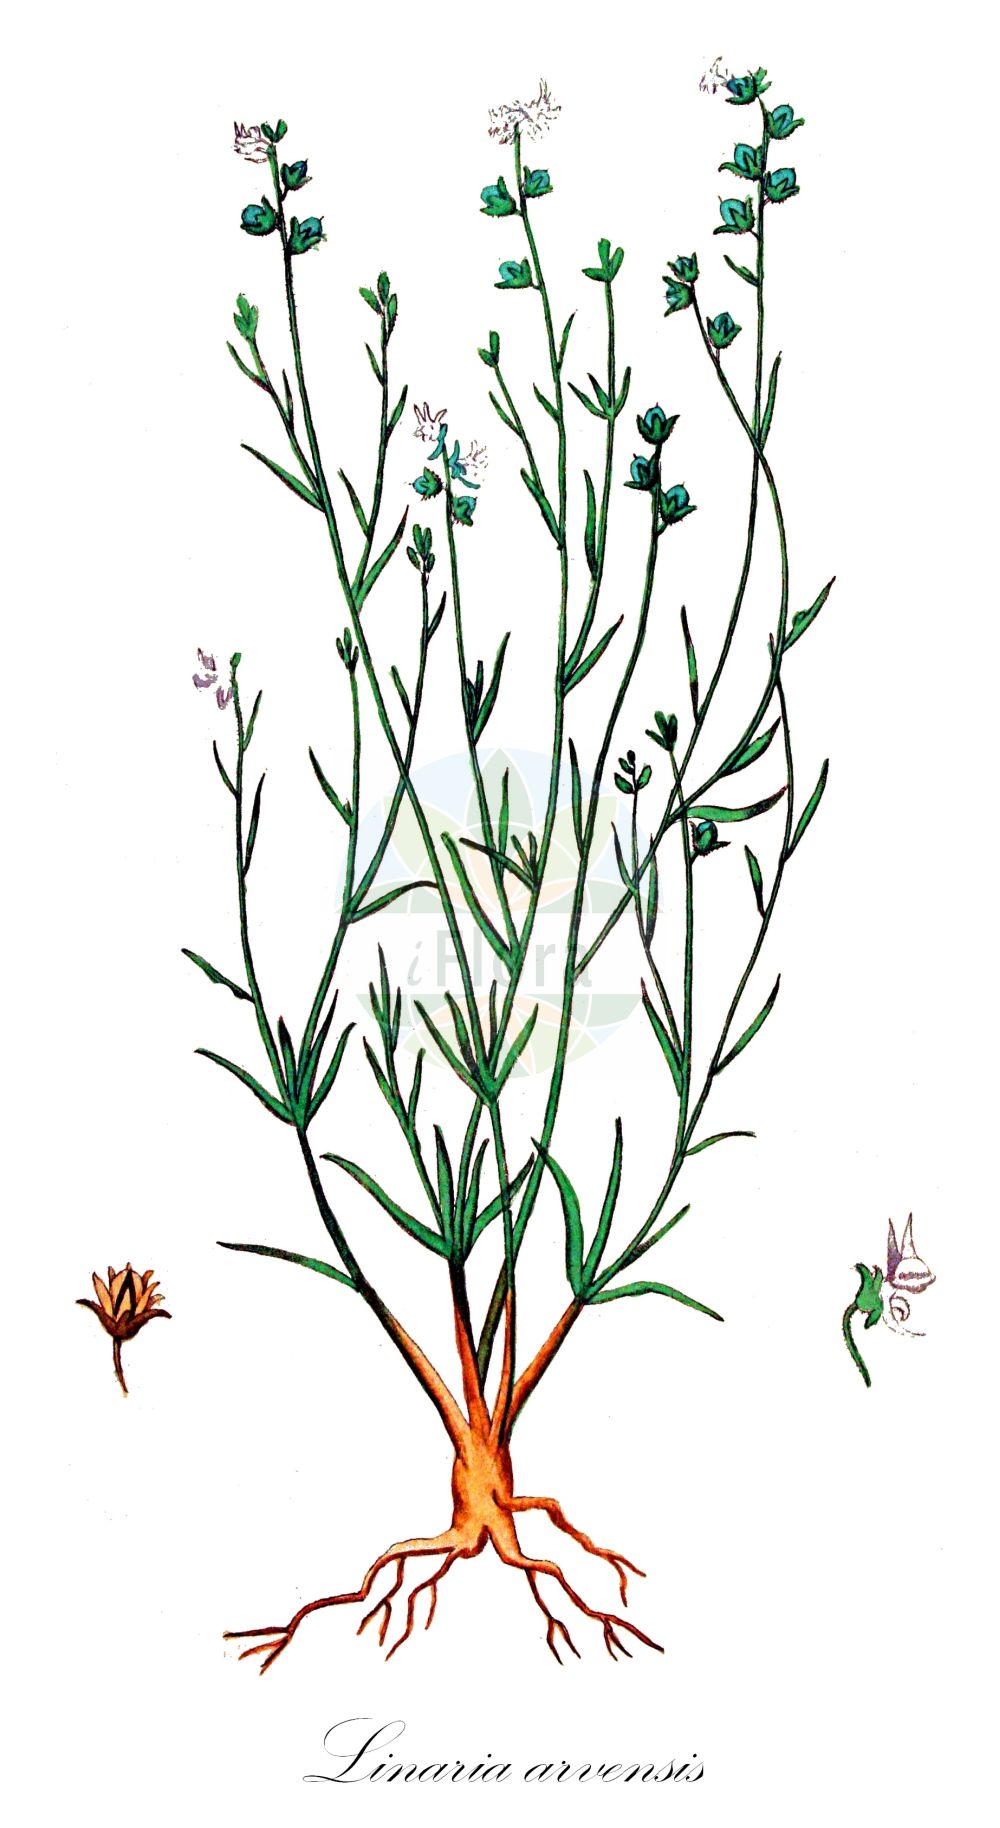 Historische Abbildung von Linaria arvensis (Acker-Leinkraut - Corn Toadflax). Das Bild zeigt Blatt, Bluete, Frucht und Same. ---- Historical Drawing of Linaria arvensis (Acker-Leinkraut - Corn Toadflax). The image is showing leaf, flower, fruit and seed.(Linaria arvensis,Acker-Leinkraut,Corn Toadflax,Antirrhinum arvense,Linaria arvensis,Linaria arvensis (L.) Desf.,Linaria arvensis subsp. eu-arvensis,Acker-Leinkraut,Corn Toadflax,Field Toadflax,Linaria,Leinkraut,Toadflax,Plantaginaceae,Wegerichgewächse,Plantain family,Blatt,Bluete,Frucht,Same,leaf,flower,fruit,seed,Kops (1800-1934))